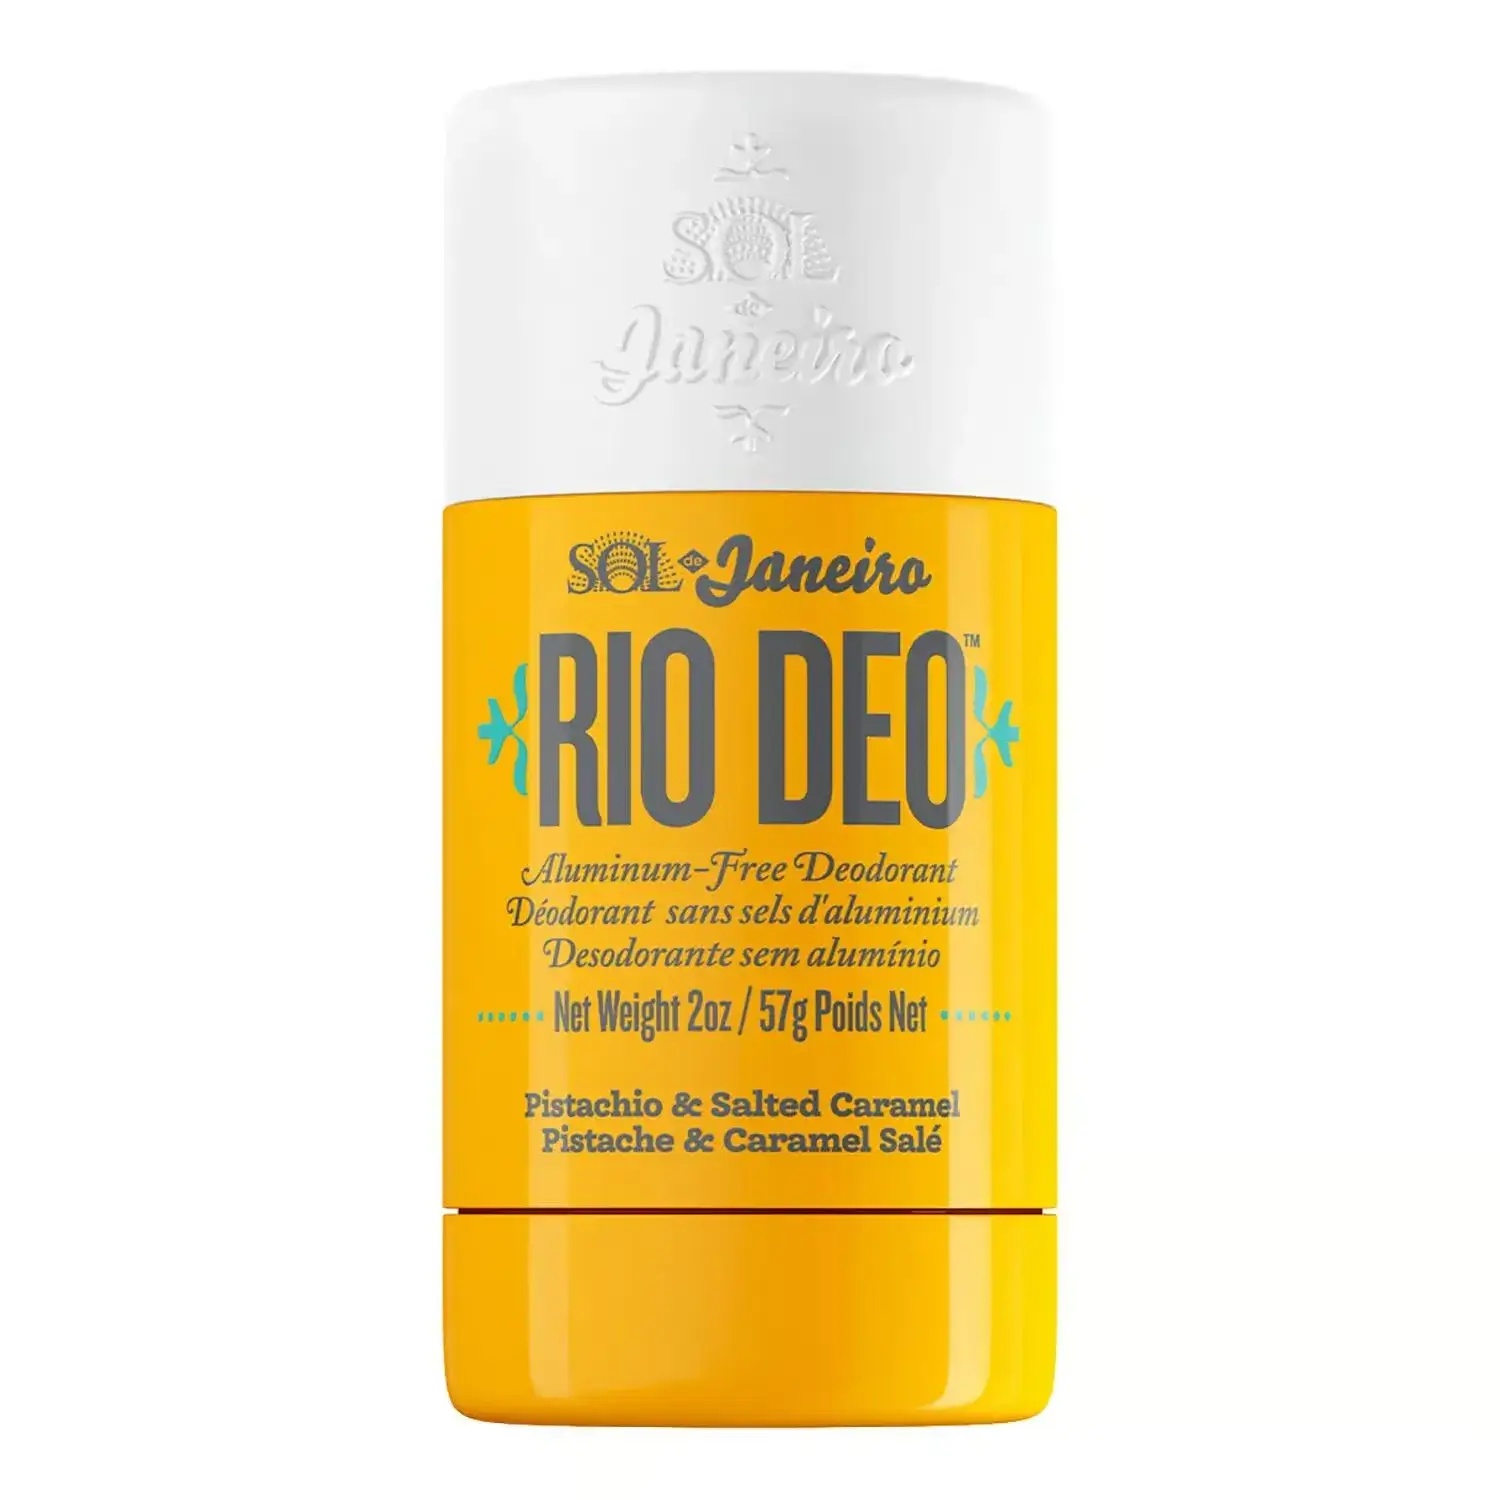 Sol De Janeiro Rio Deo Aluminum-Free Deodorant Cheirosa 62 57g Discounts and Cashback